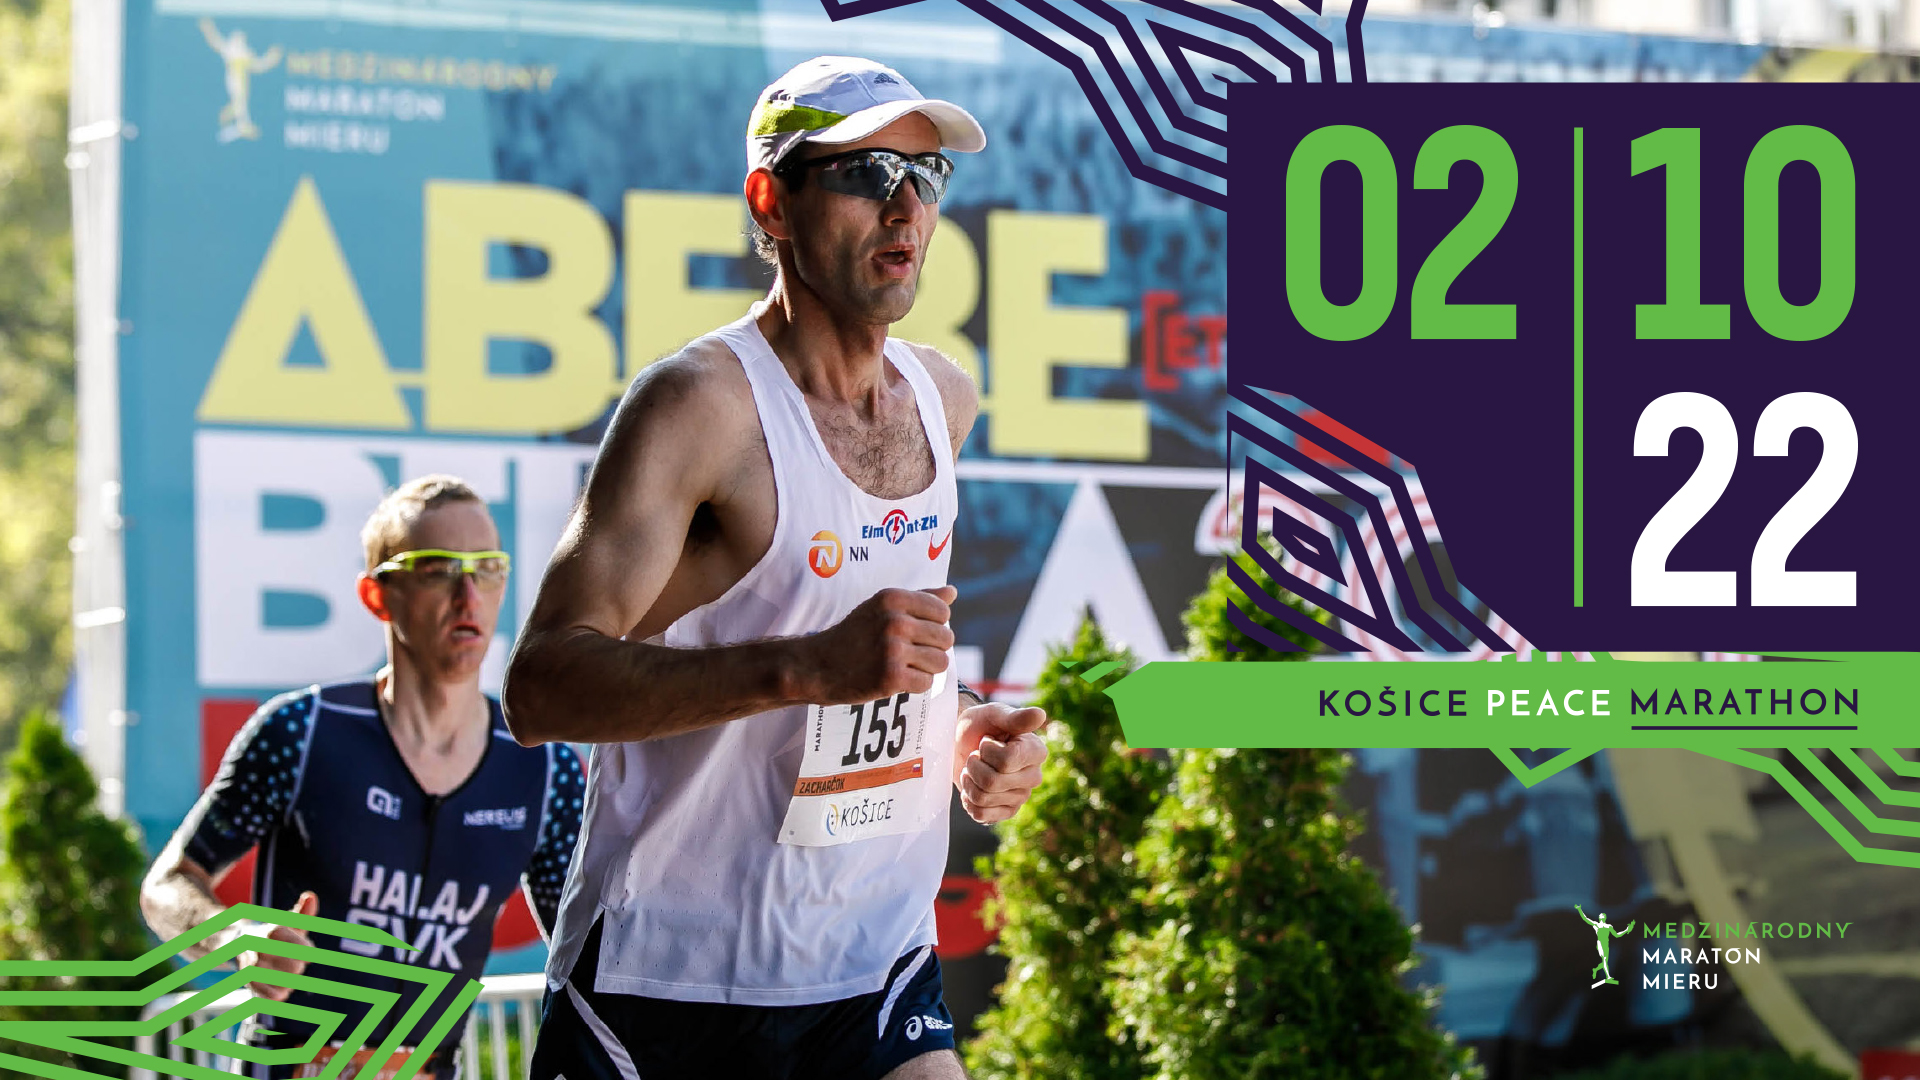 Medzinárodný maratón mieru / Košice Peace Marathon 2022 Hlavná 1